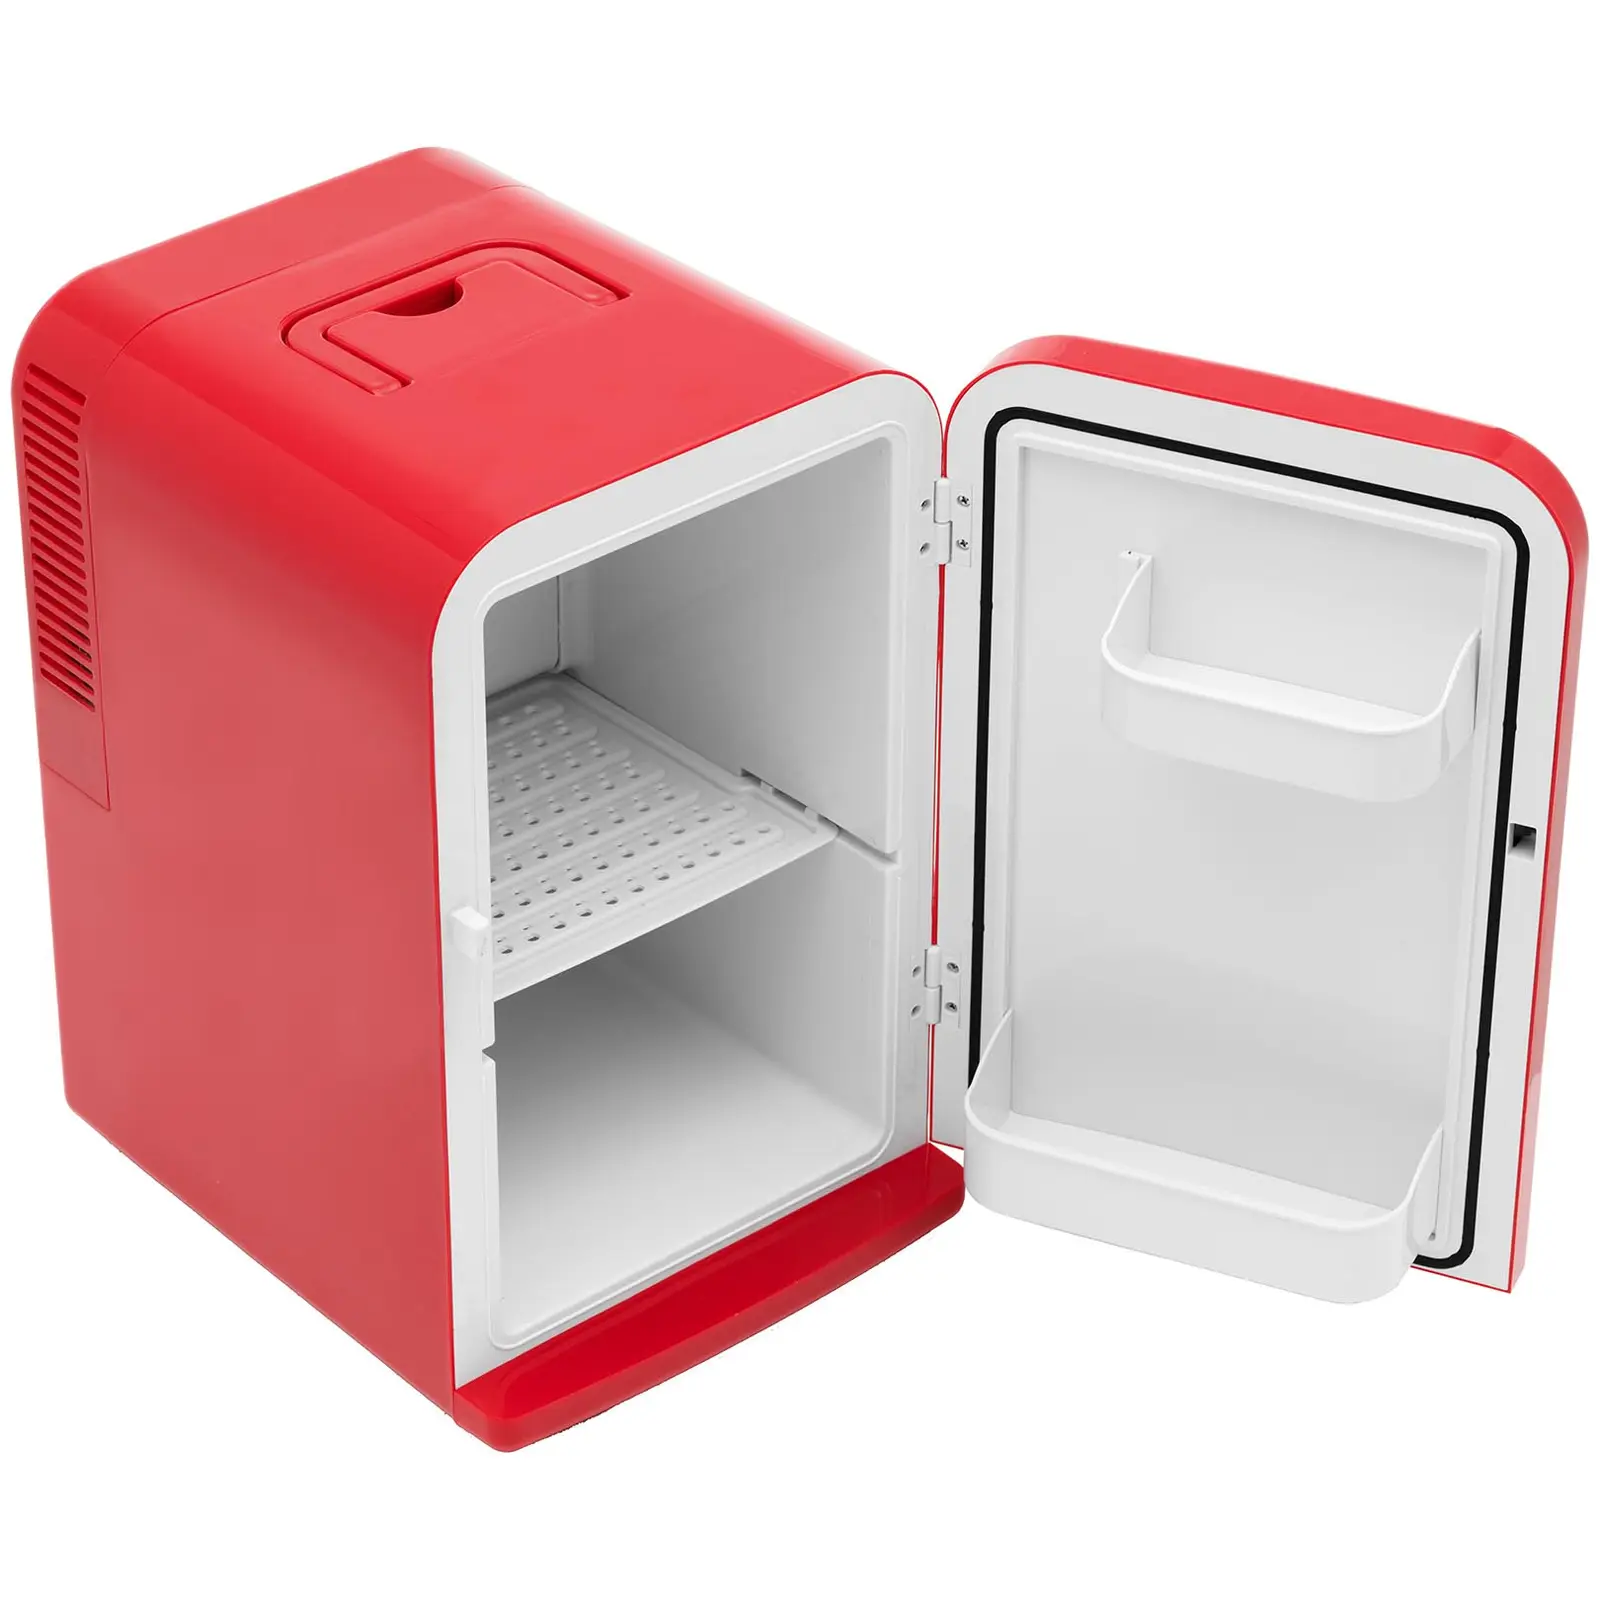 B-Ware Mini-Kühlschrank 12 V / 230 V - 2-in-1-Gerät mit Warmhaltefunktion - 15 L - Rot